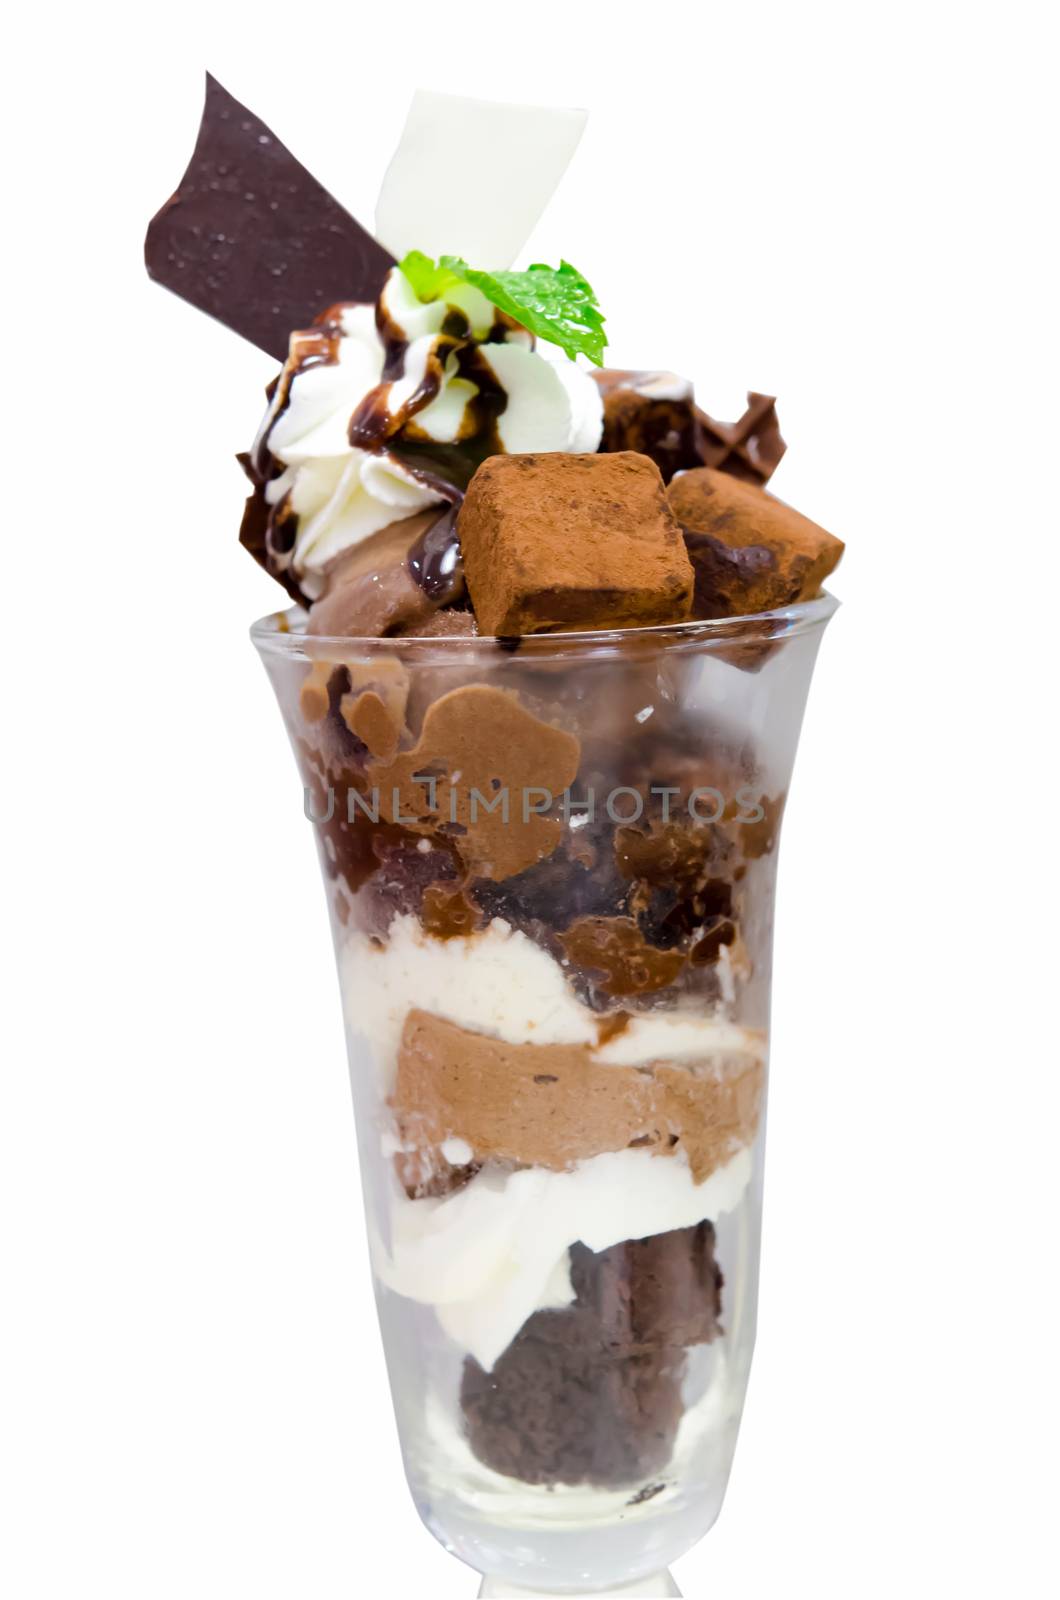 Chocolate ice cream by aoo3771